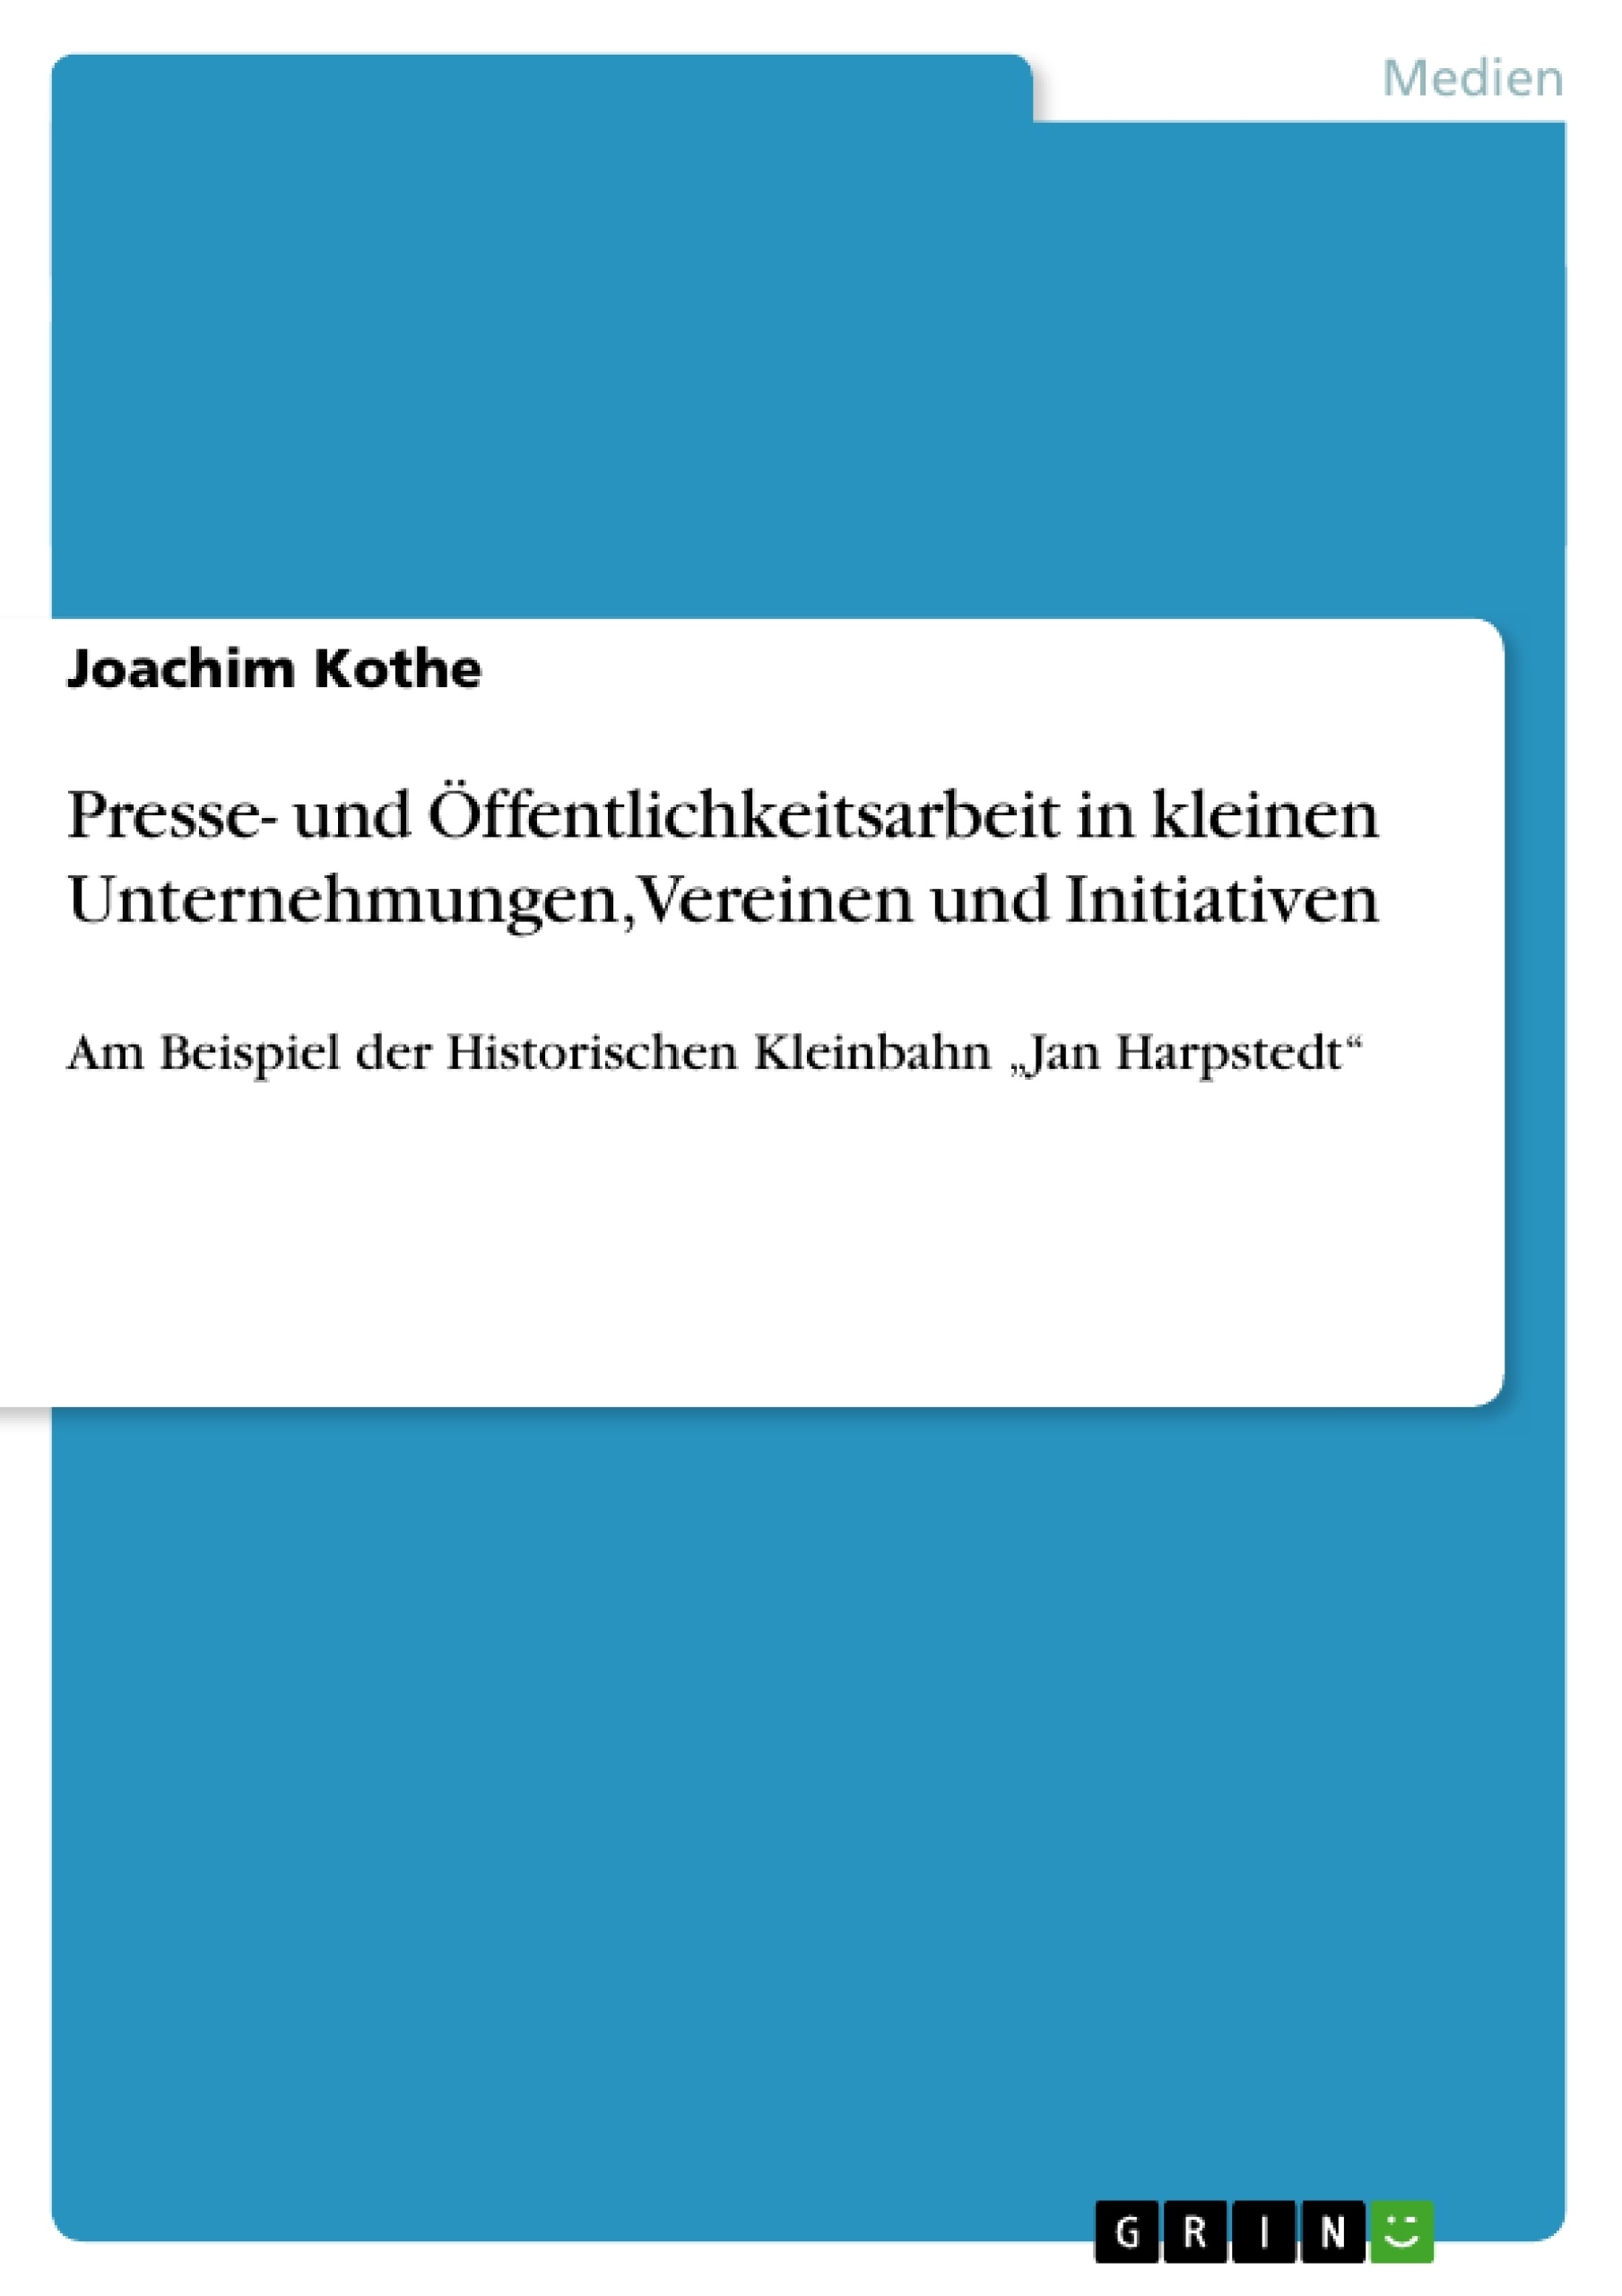 Title: Presse- und Öffentlichkeitsarbeit in kleinen Unternehmungen, Vereinen und Initiativen